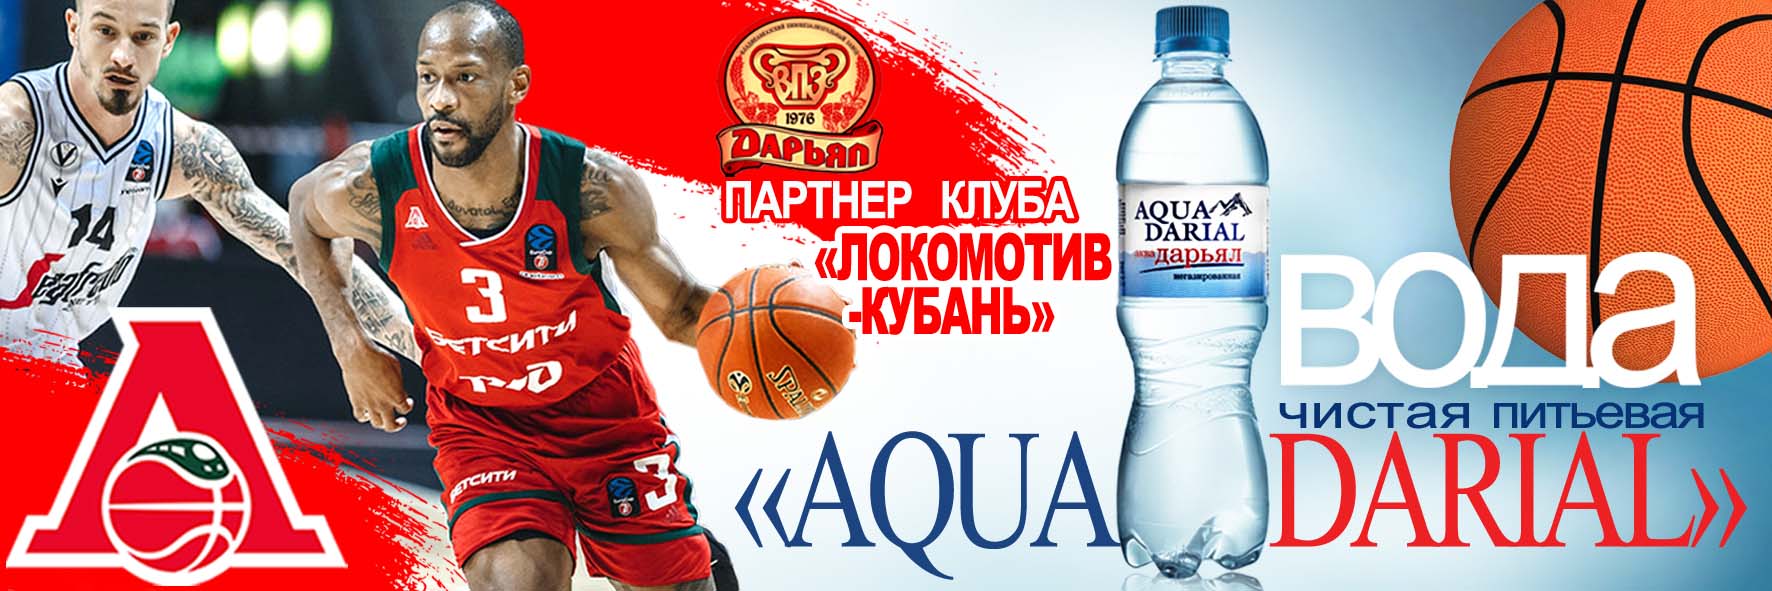 «ДАРЬЯЛ» - официальный партнёр баскетбольного клуба «ЛОКОМОТИВ-КУБАНЬ»